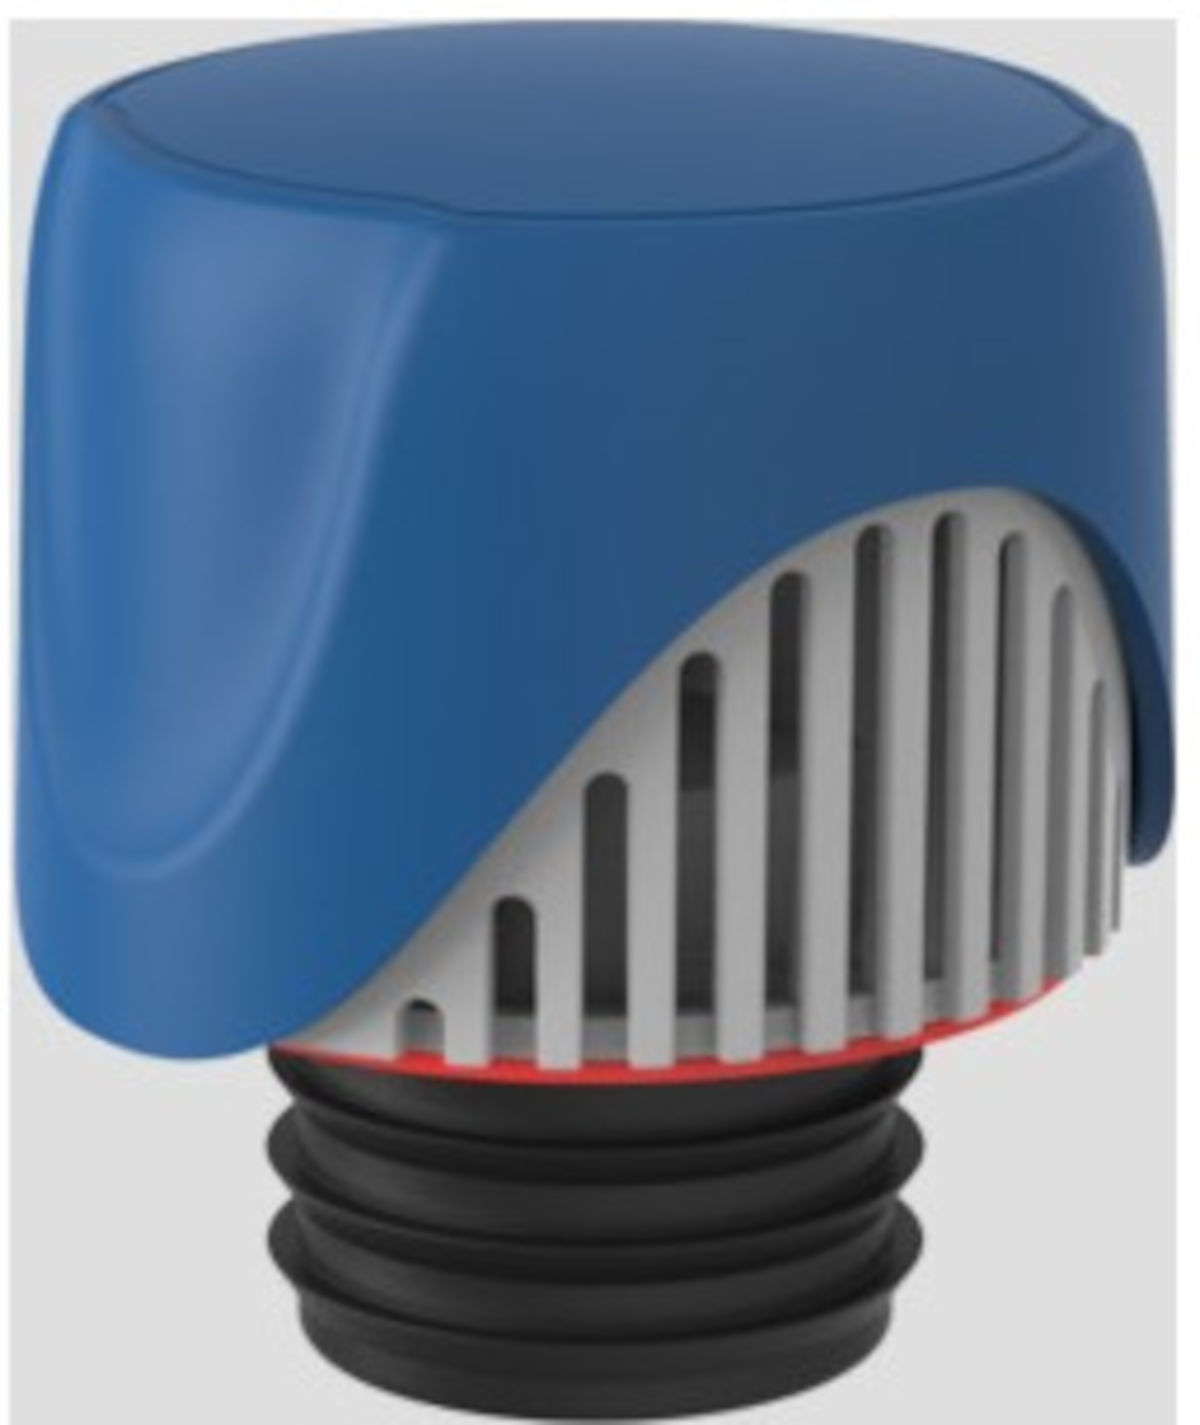 Sanit Rohrbelüfter ventilair DN 30-50, Frontansicht, auf grauem Hintergrund